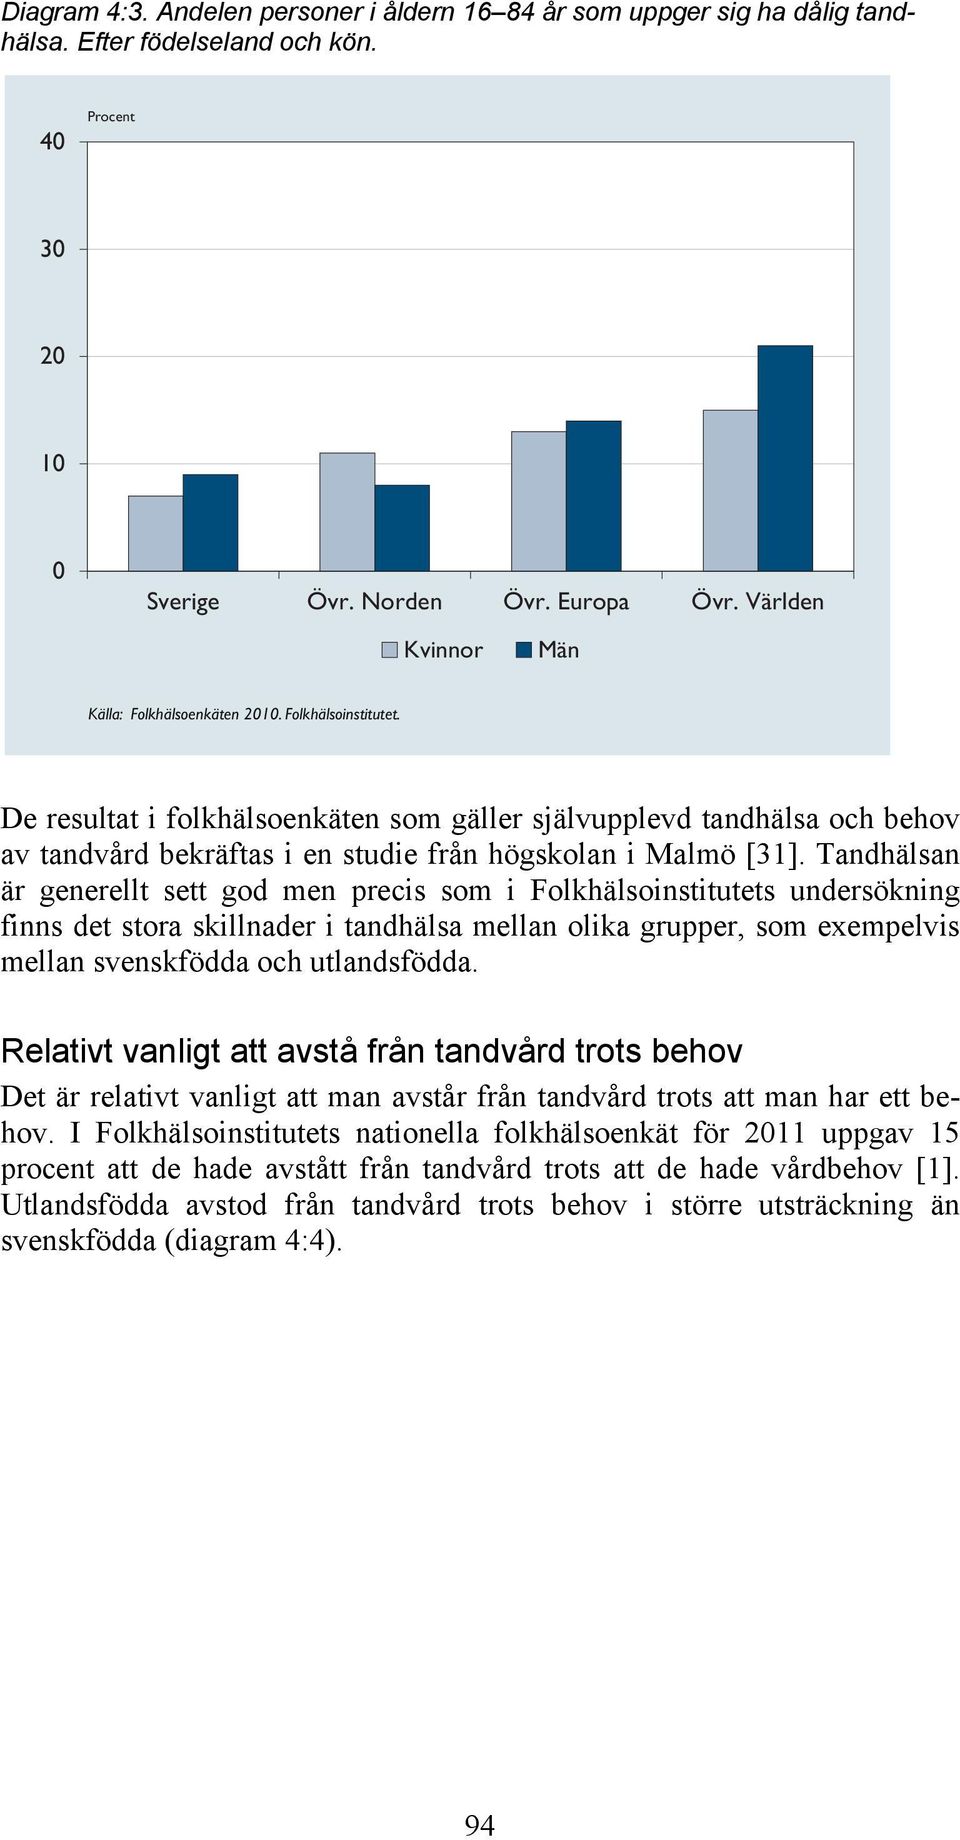 De resultat i folkhälsoenkäten som gäller självupplevd tandhälsa och behov av tandvård bekräftas i en studie från högskolan i Malmö [31].